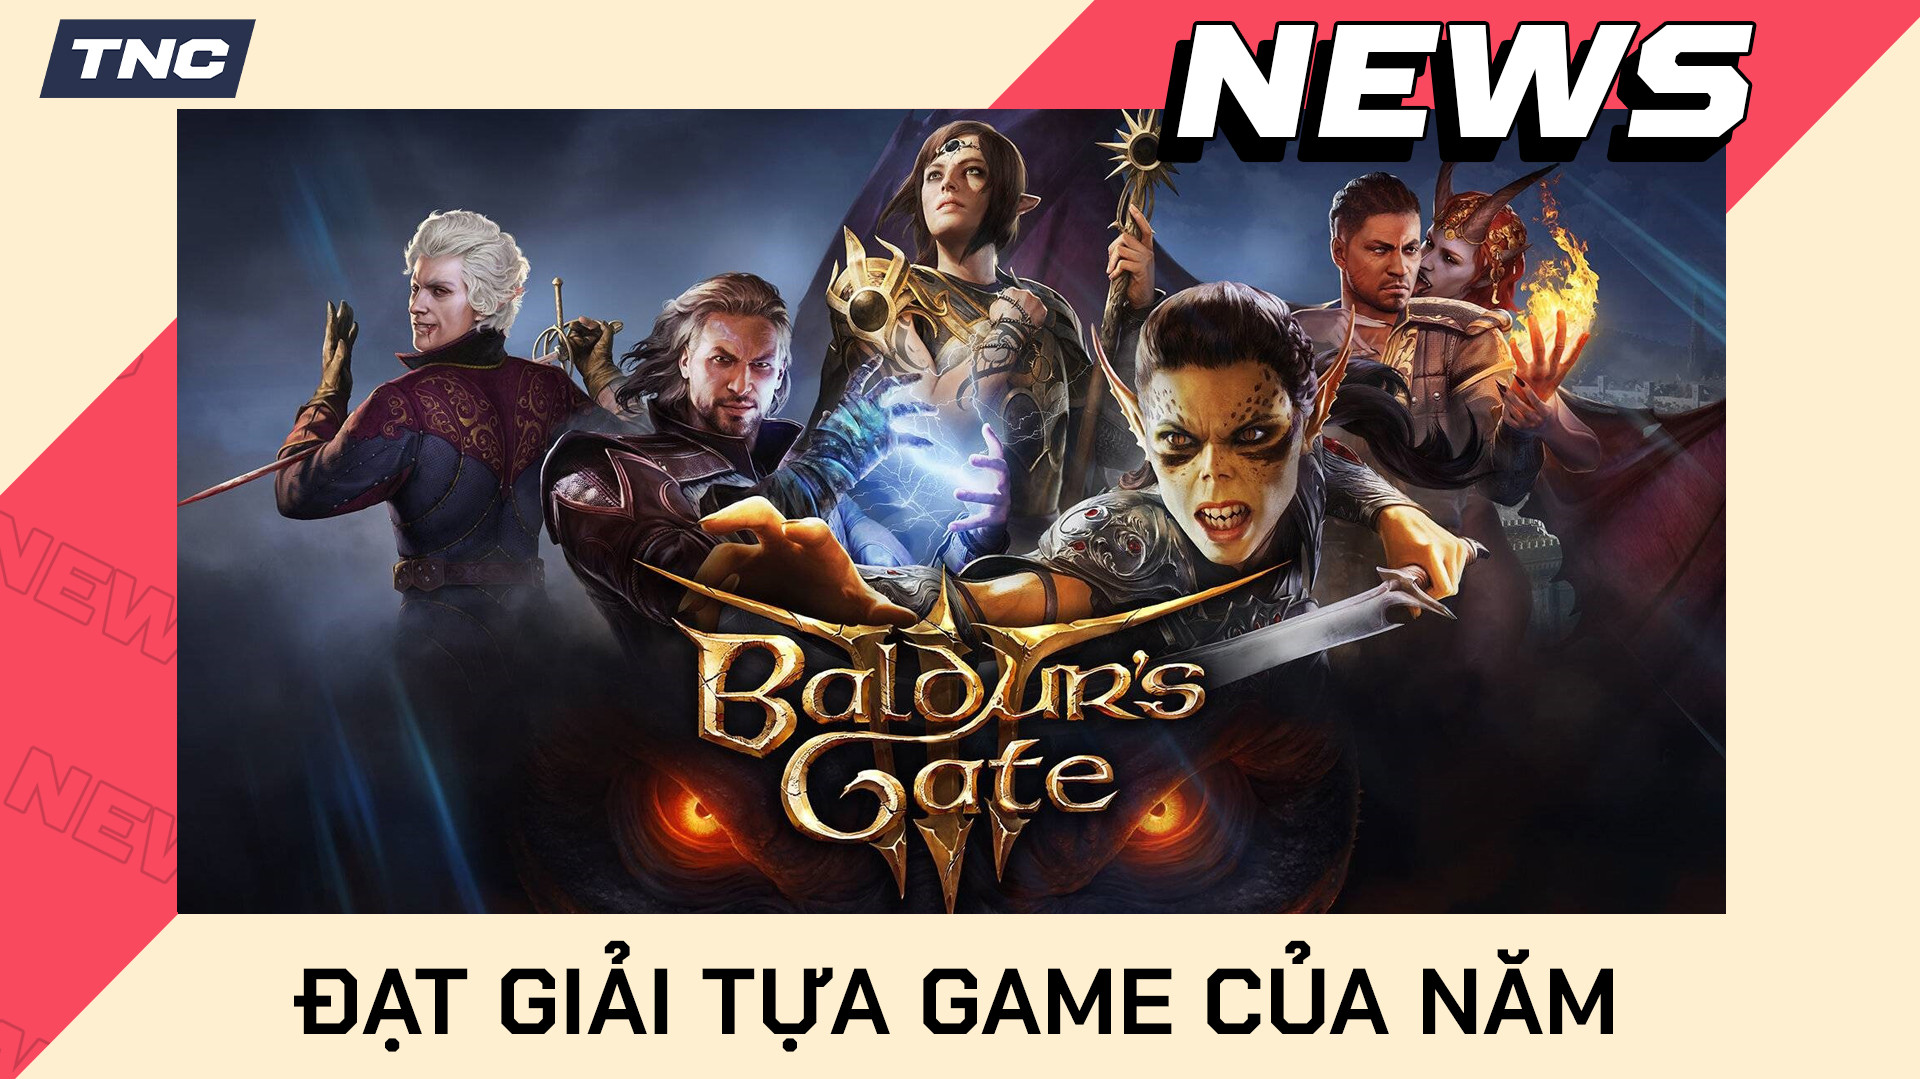 Baldur's Gate 3 nhận giải thưởng cao quý nhất 